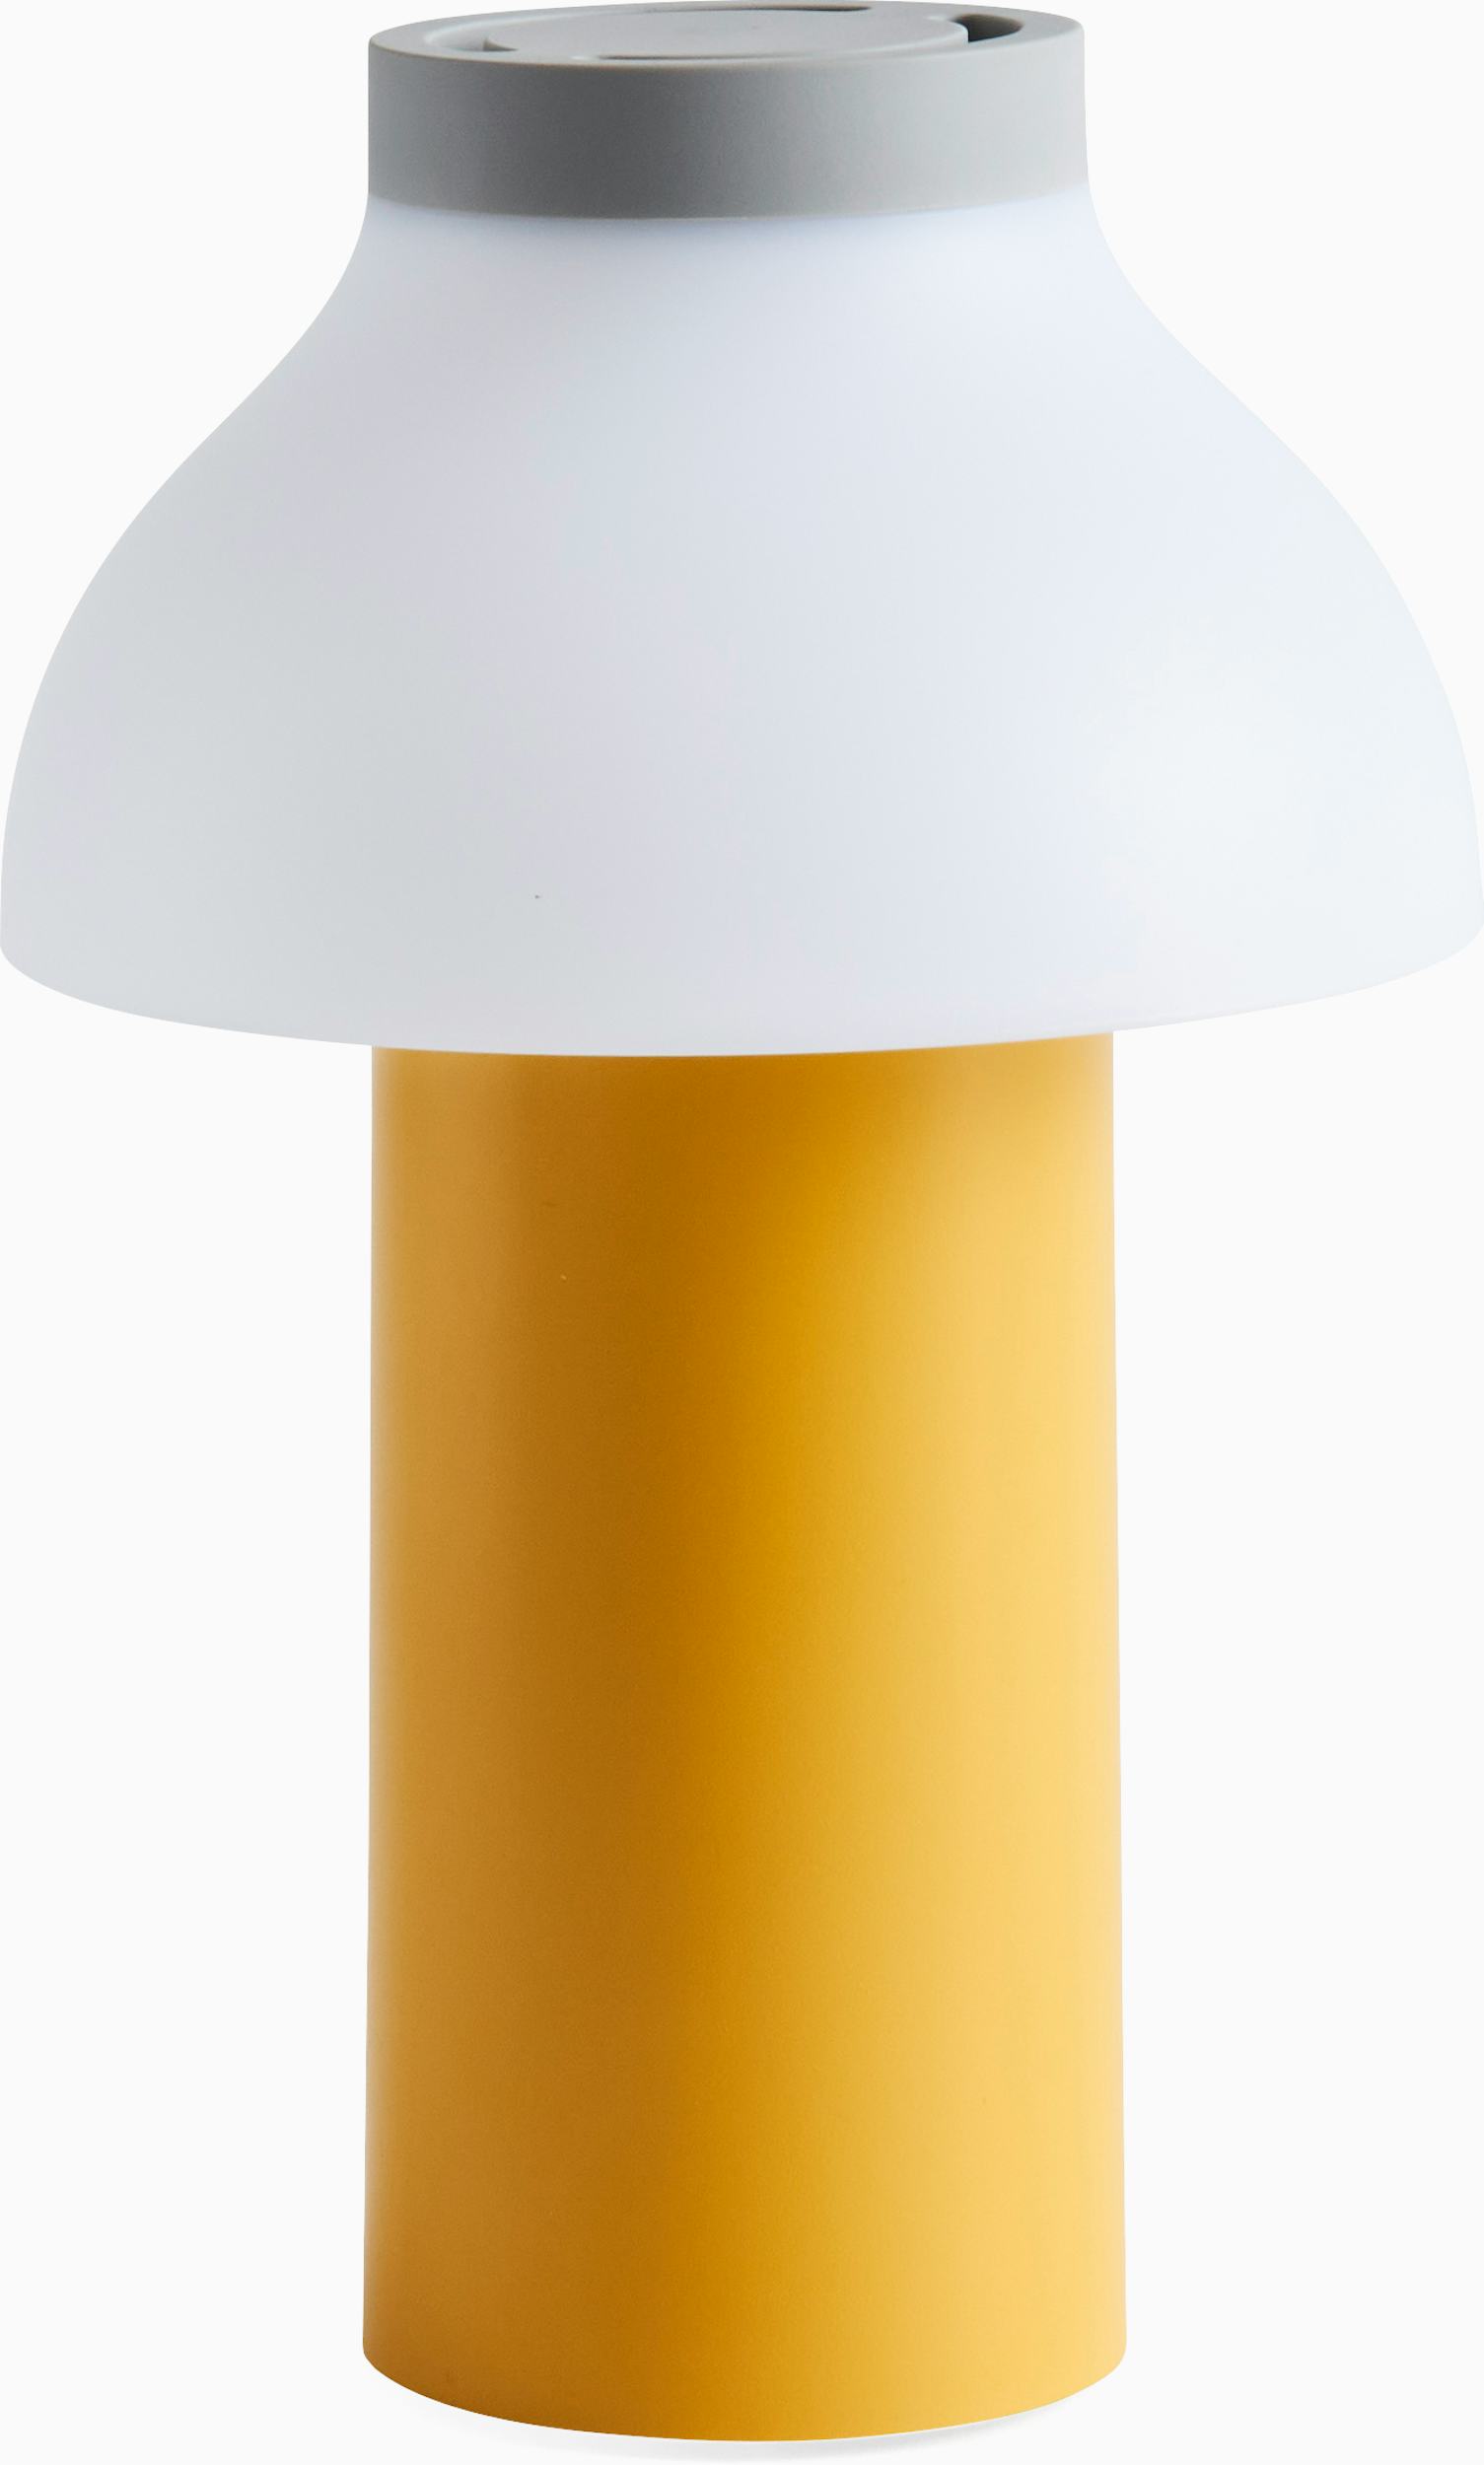 Art. N° 0981504118 : Lampe de travail LED rechargeable Ergopower